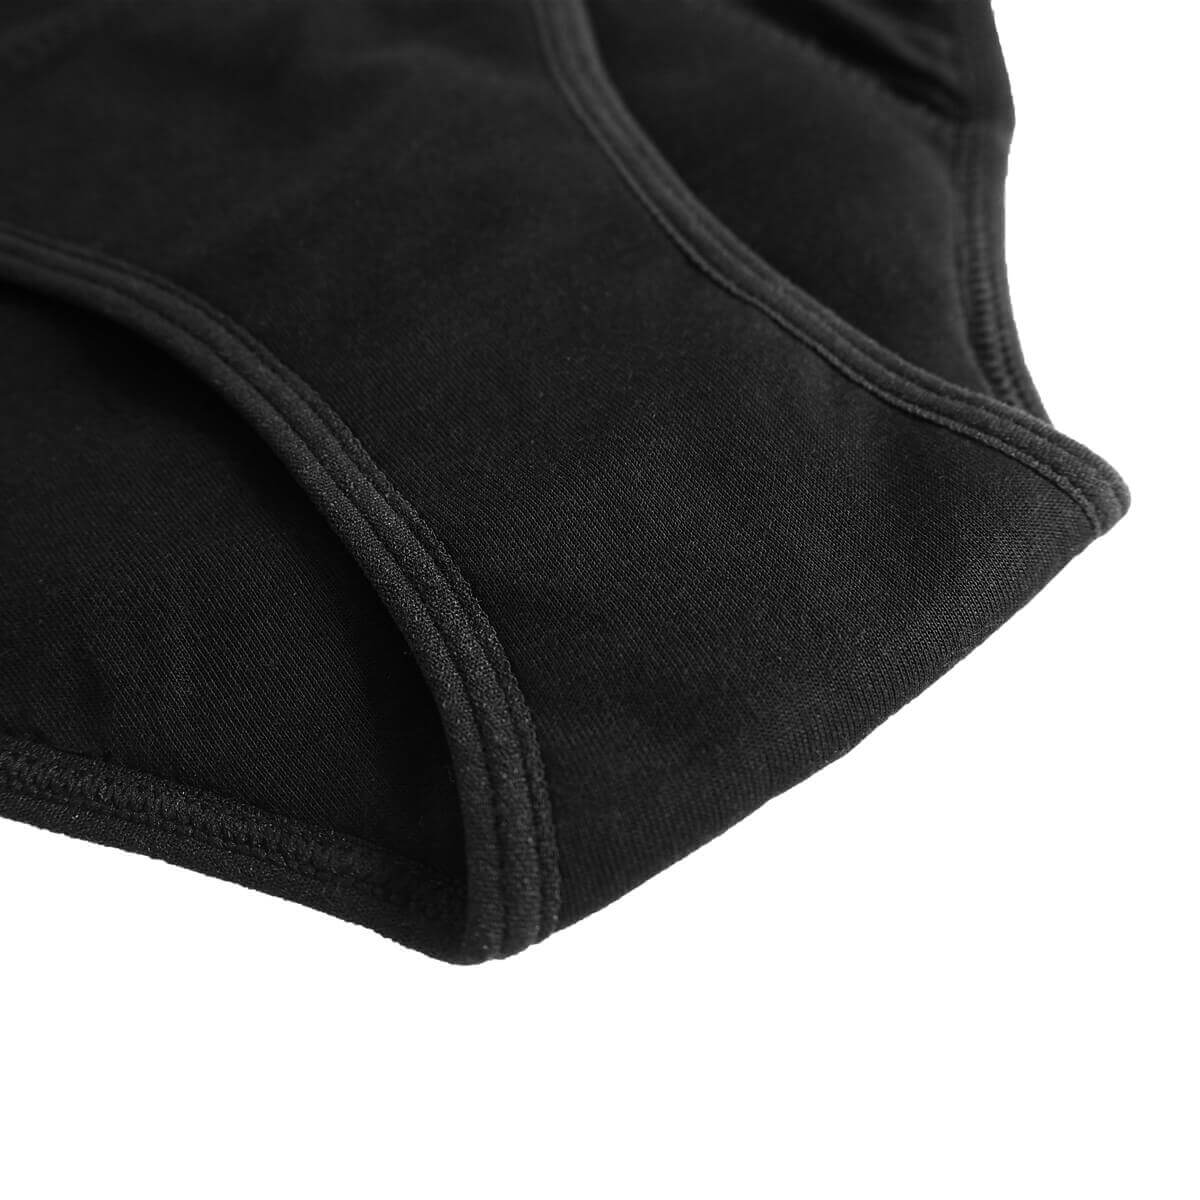 Pack of 3 ANNA Period Panties (+ 1 FREE Waterproof Bag!)